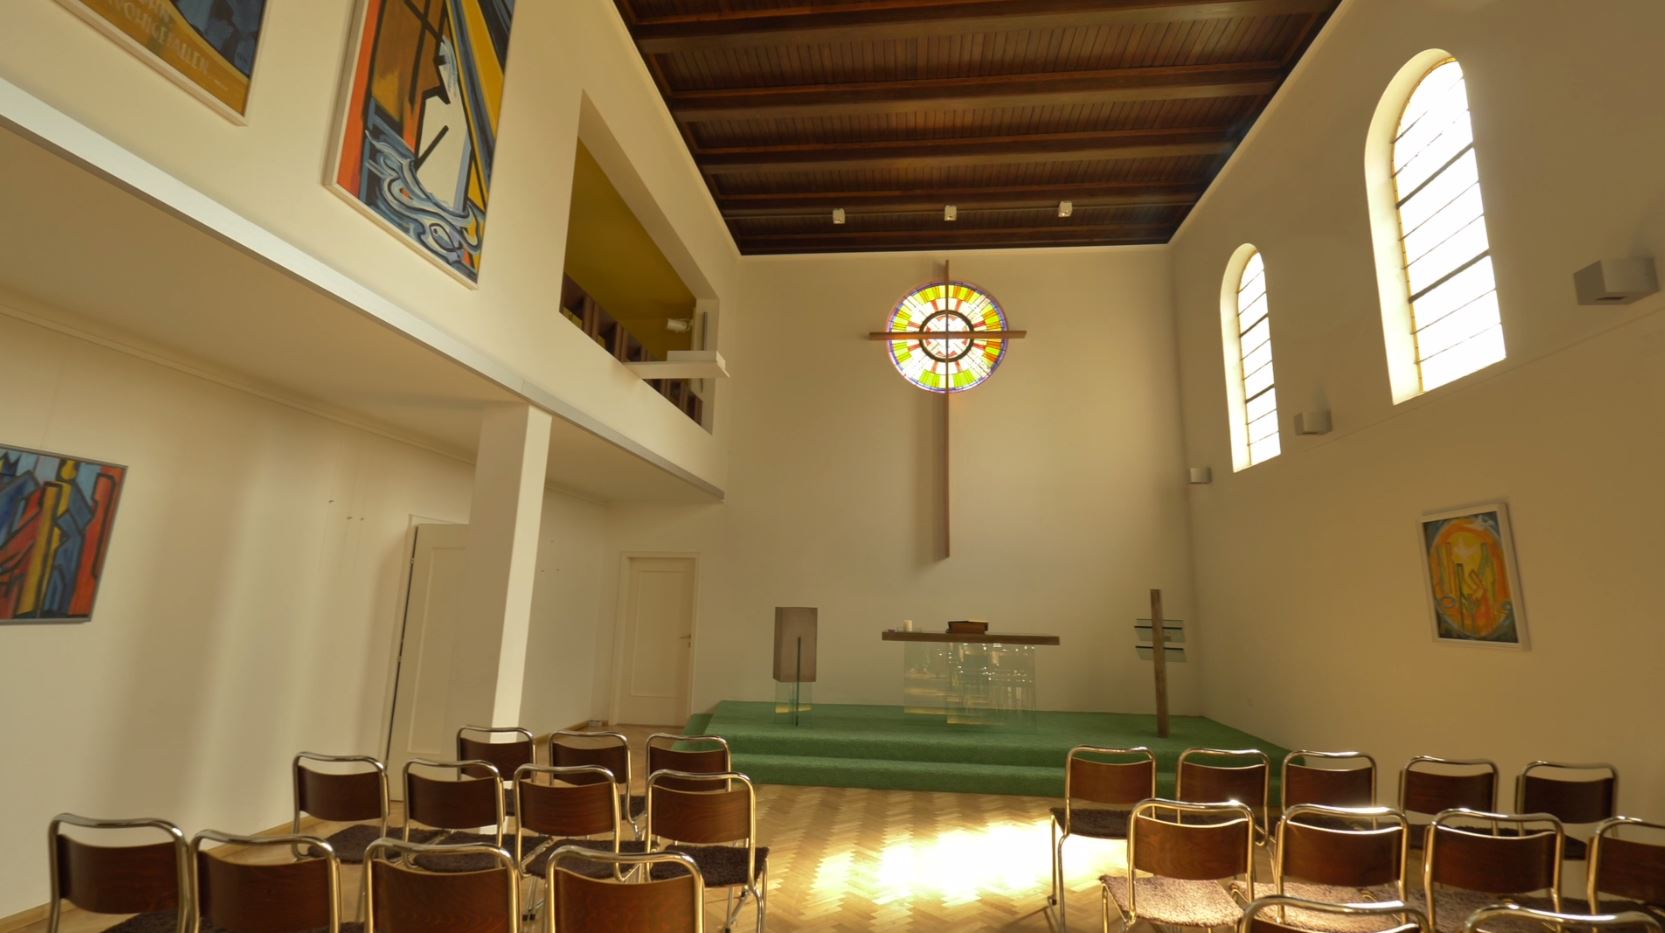 Evangelische Kirche Weiz Altarbereich